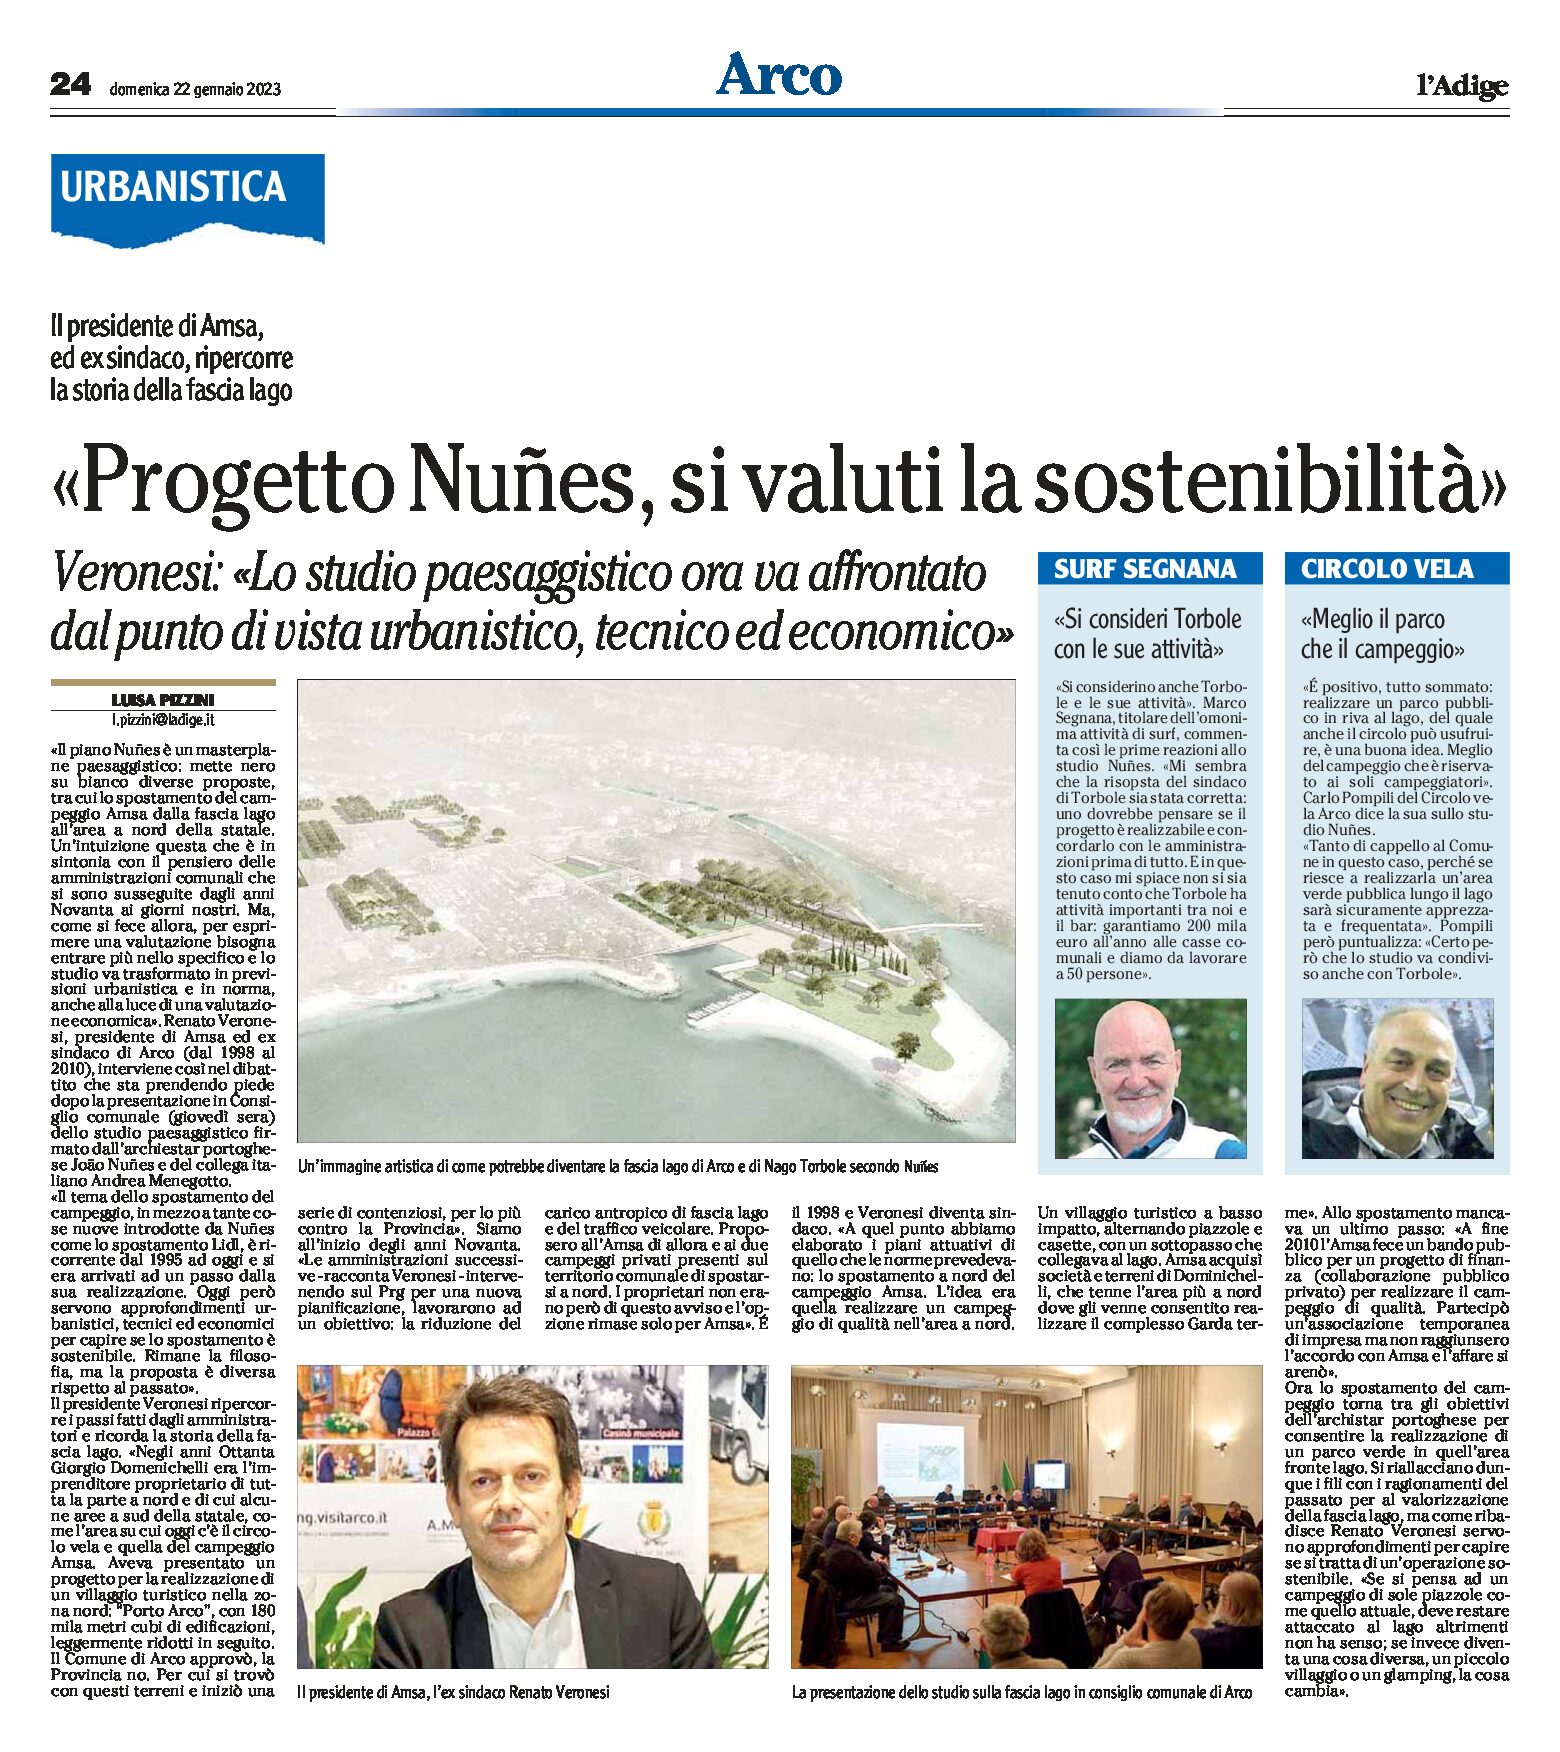 Arco: “progetto Nunes, si valuti la sostenibilità” intervista a Veronesi presidente Amsa ed ex sindaco